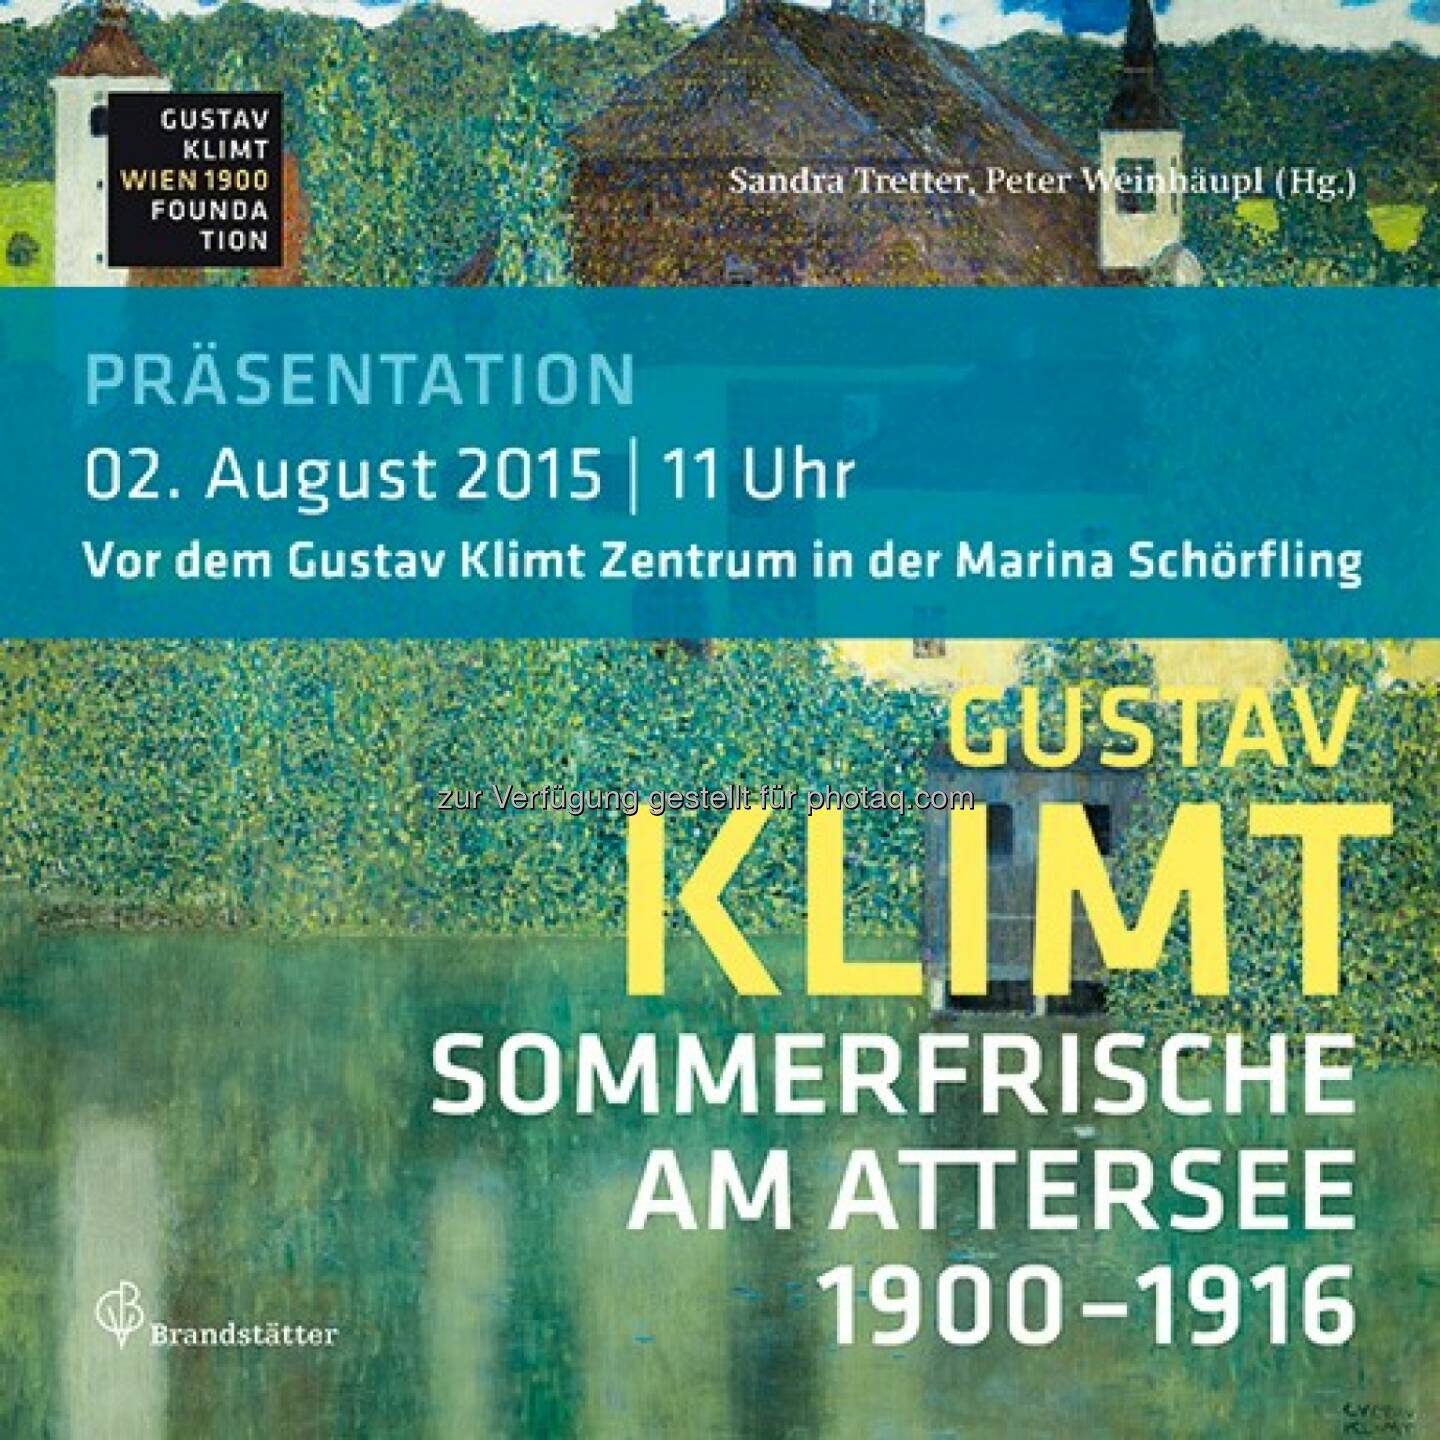 Gustav Klimt & die Sommerfrische am Attersee : Vorstellung neues Klimt-Buch und MQ-Möbel am Attersee : Fotocredit: Klimt-Foundation, Wien